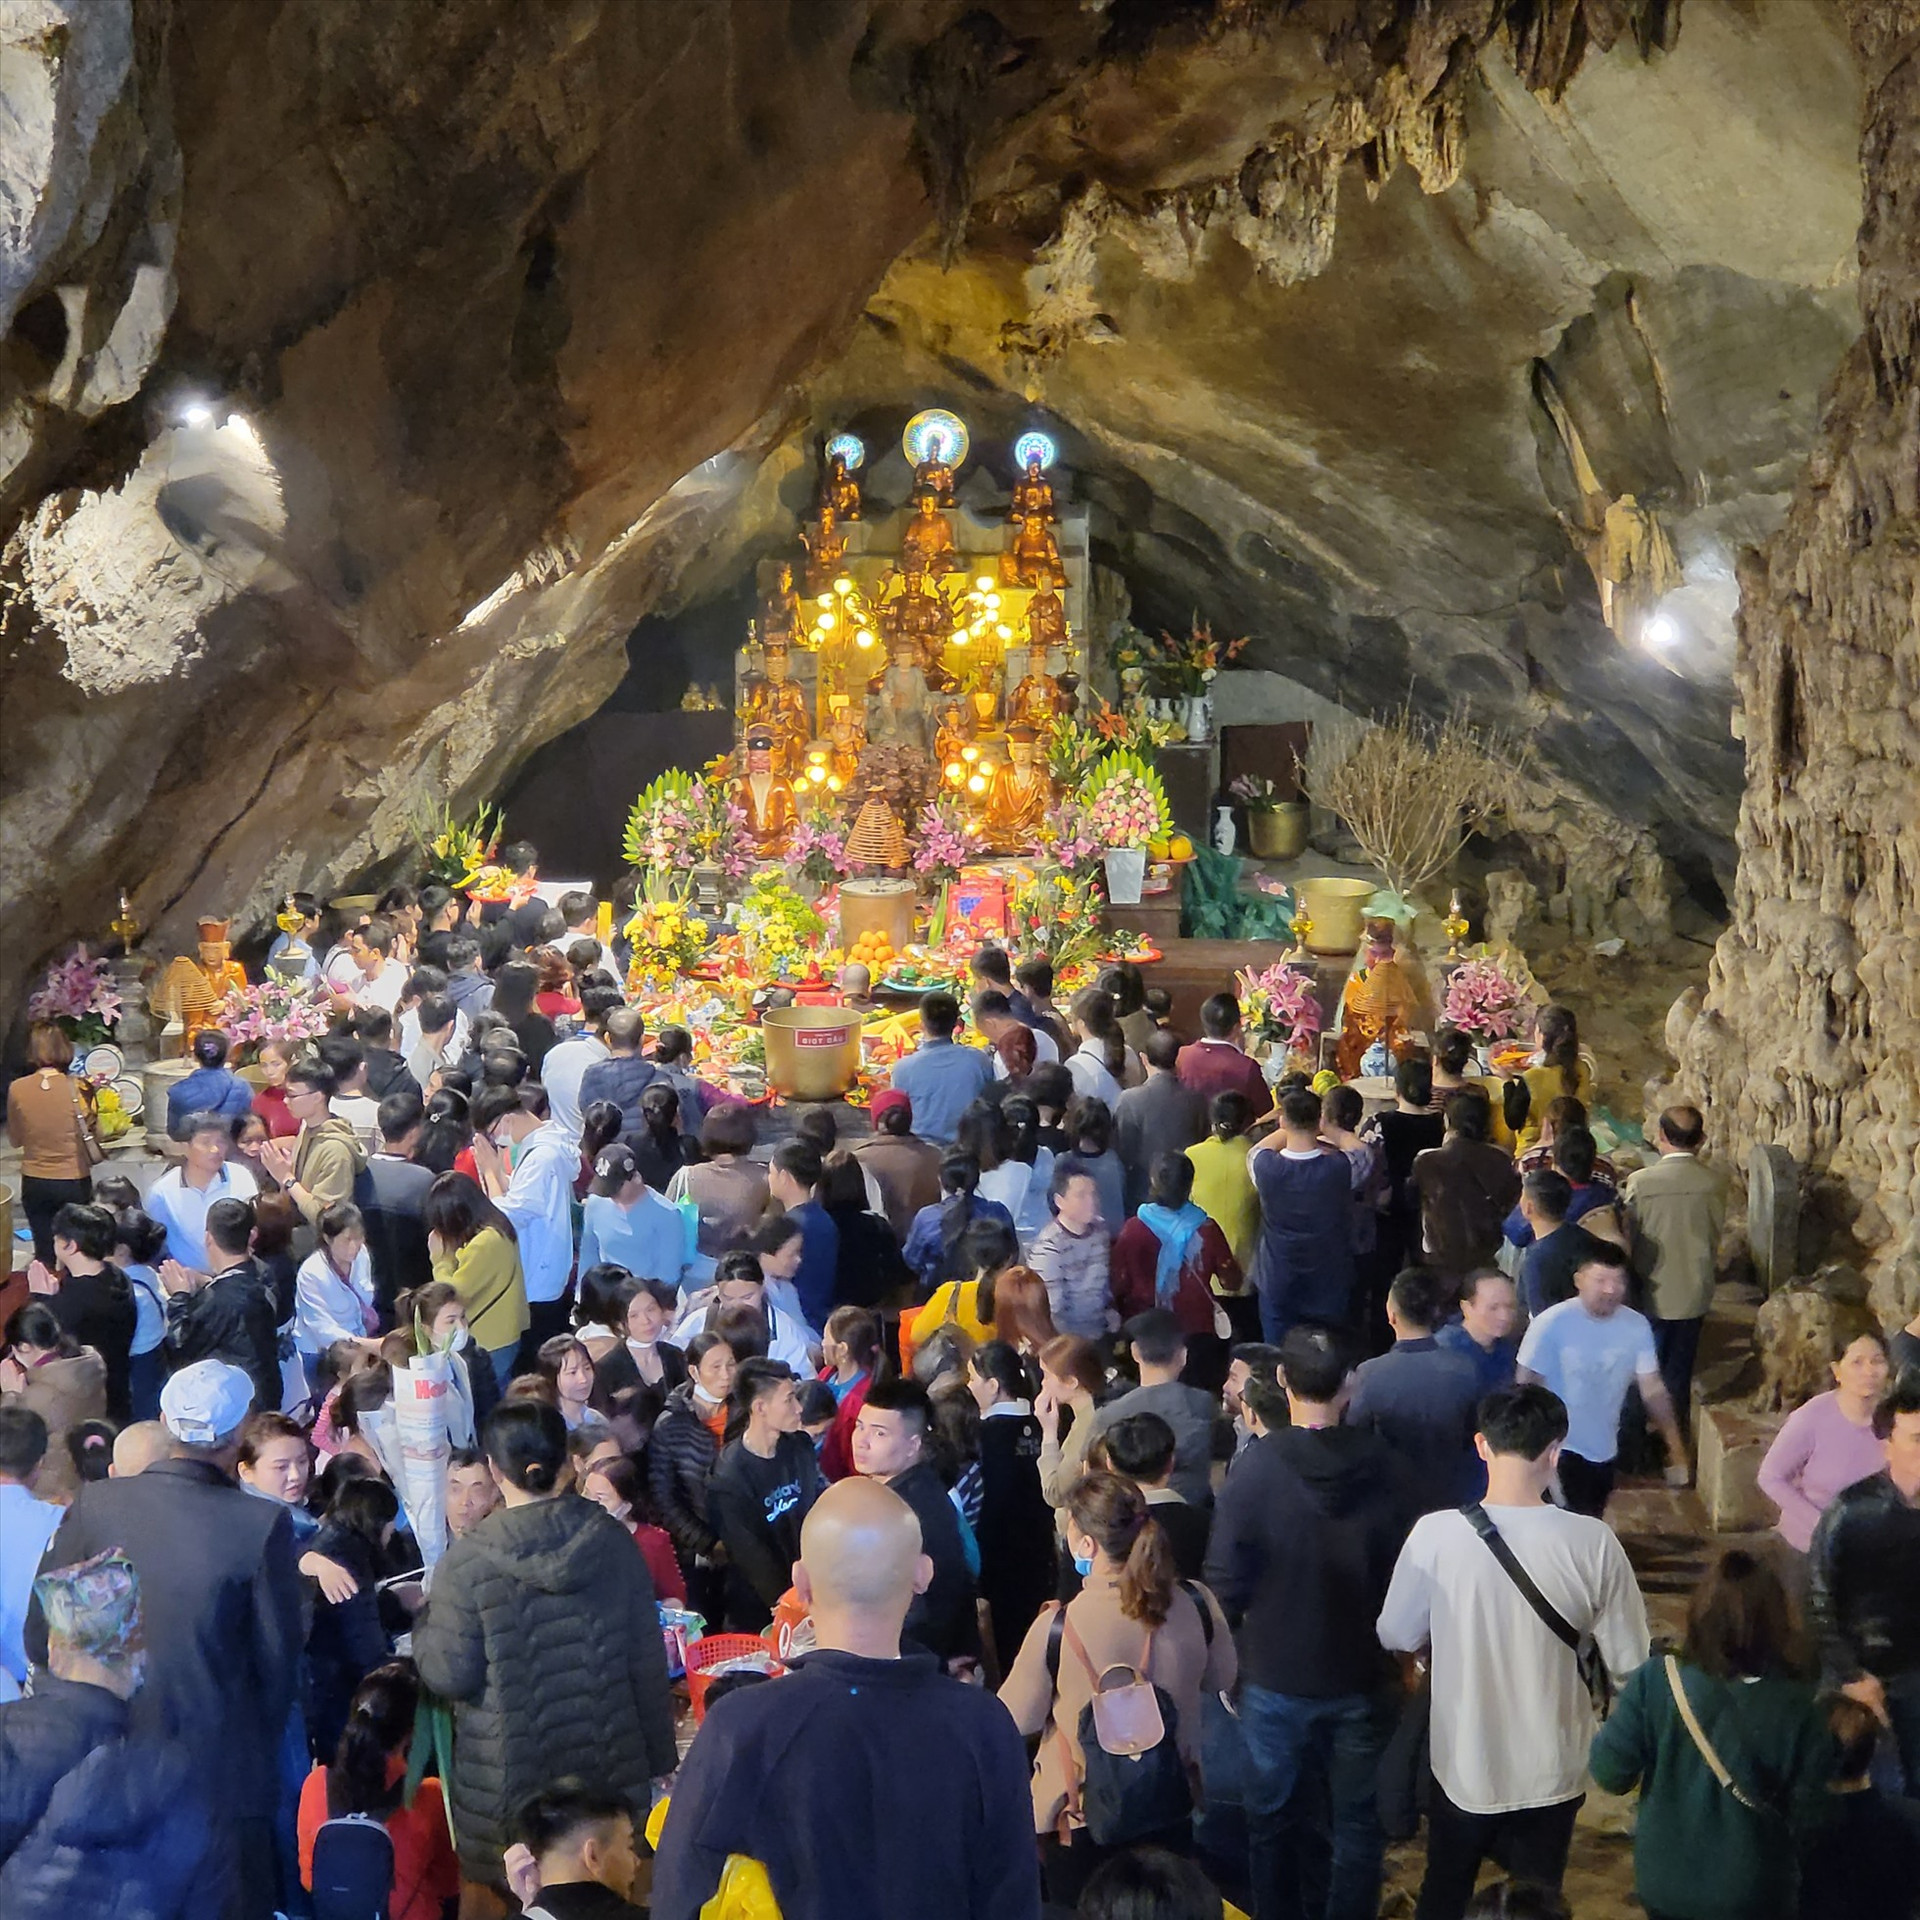 Chưa khai hội, hàng vạn du khách đã đến Chùa Hương đi lễ đầu năm - Ảnh 4.